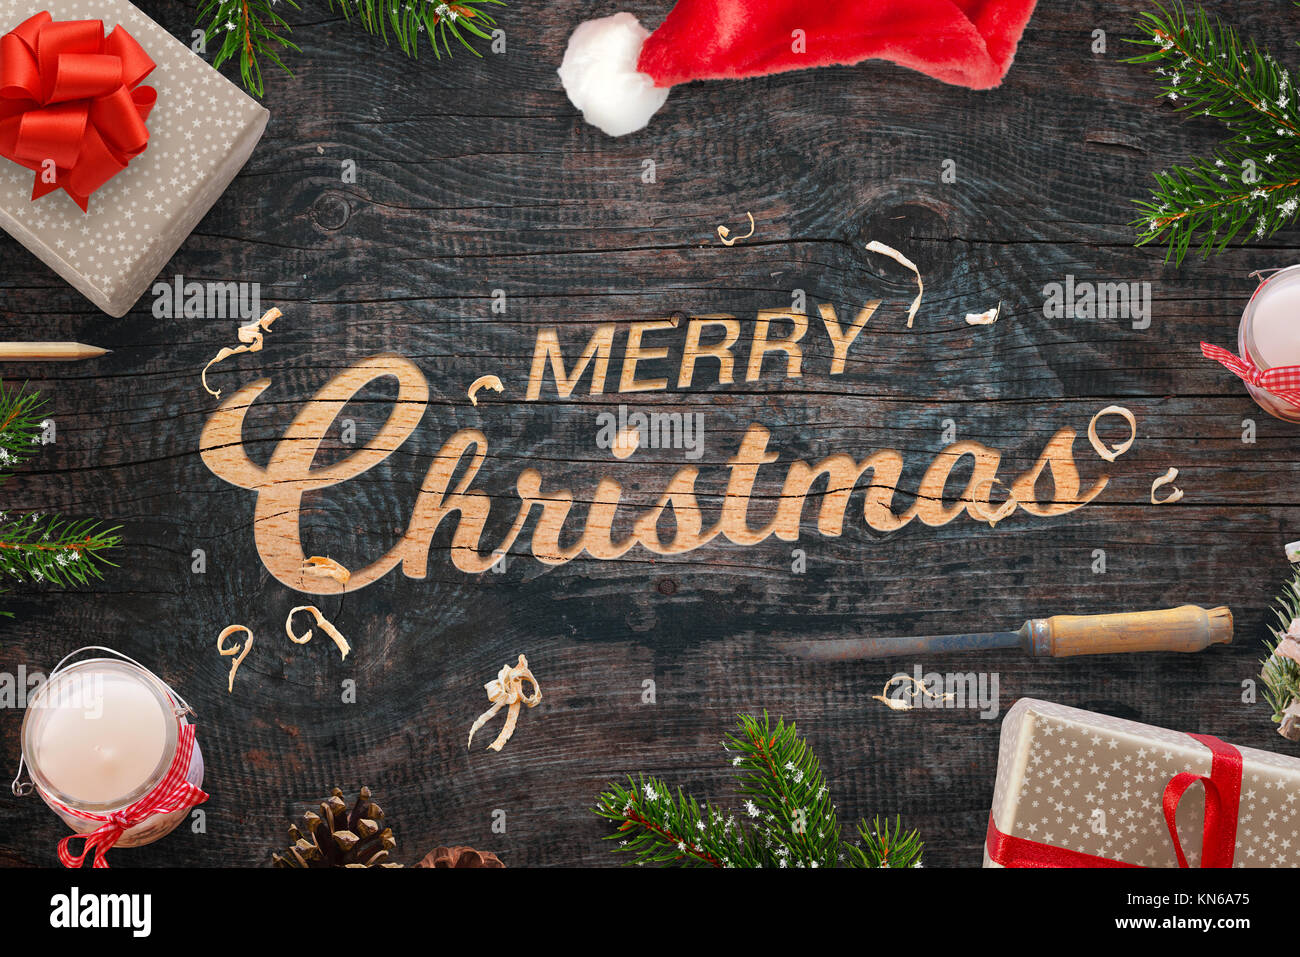 Frohe Weihnachten Gruß in eine Holzoberfläche geschnitzt. Weihnachtsgeschenke, Äste, Meißel, Kerzen, Kiefernzapfen und Santa Claus hat neben. Stockfoto